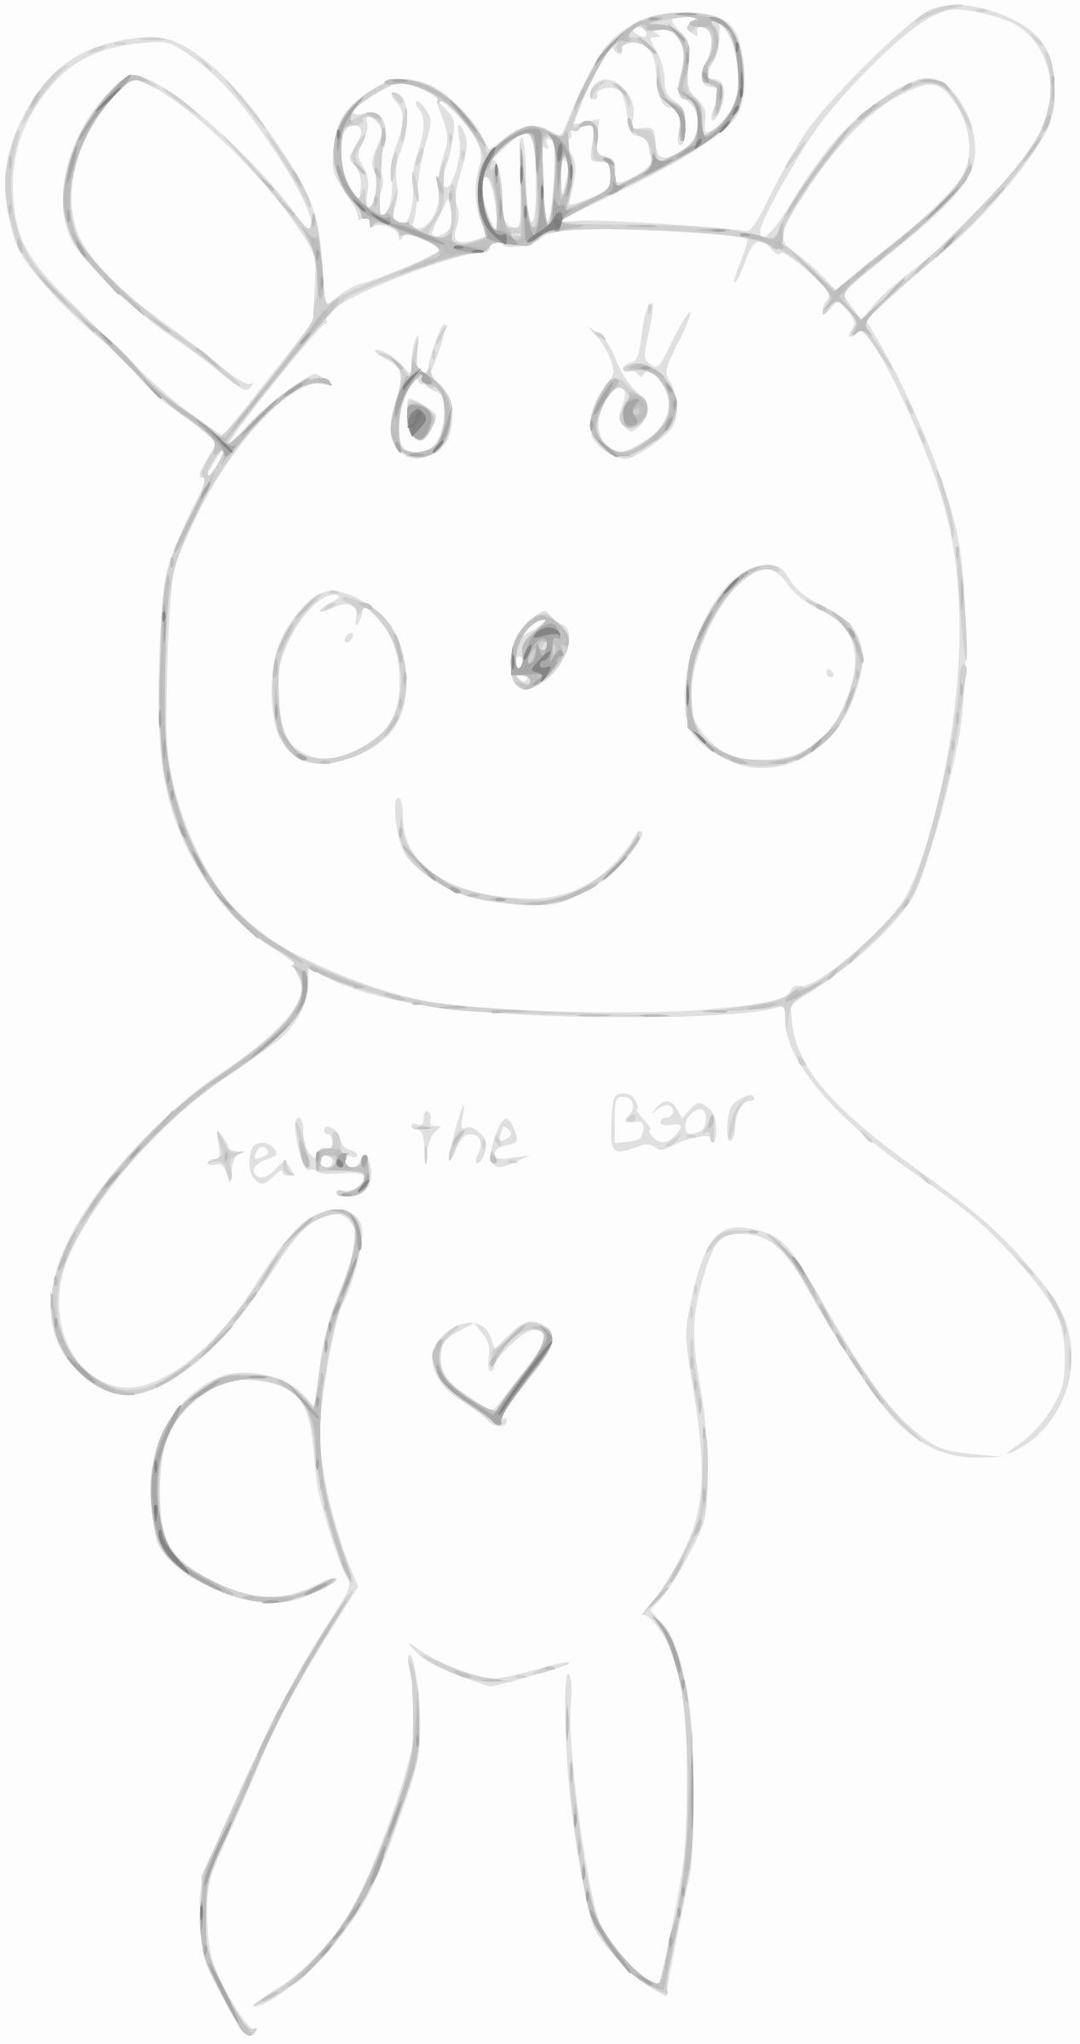 Kindergarten Art Teddy the Bear png transparent